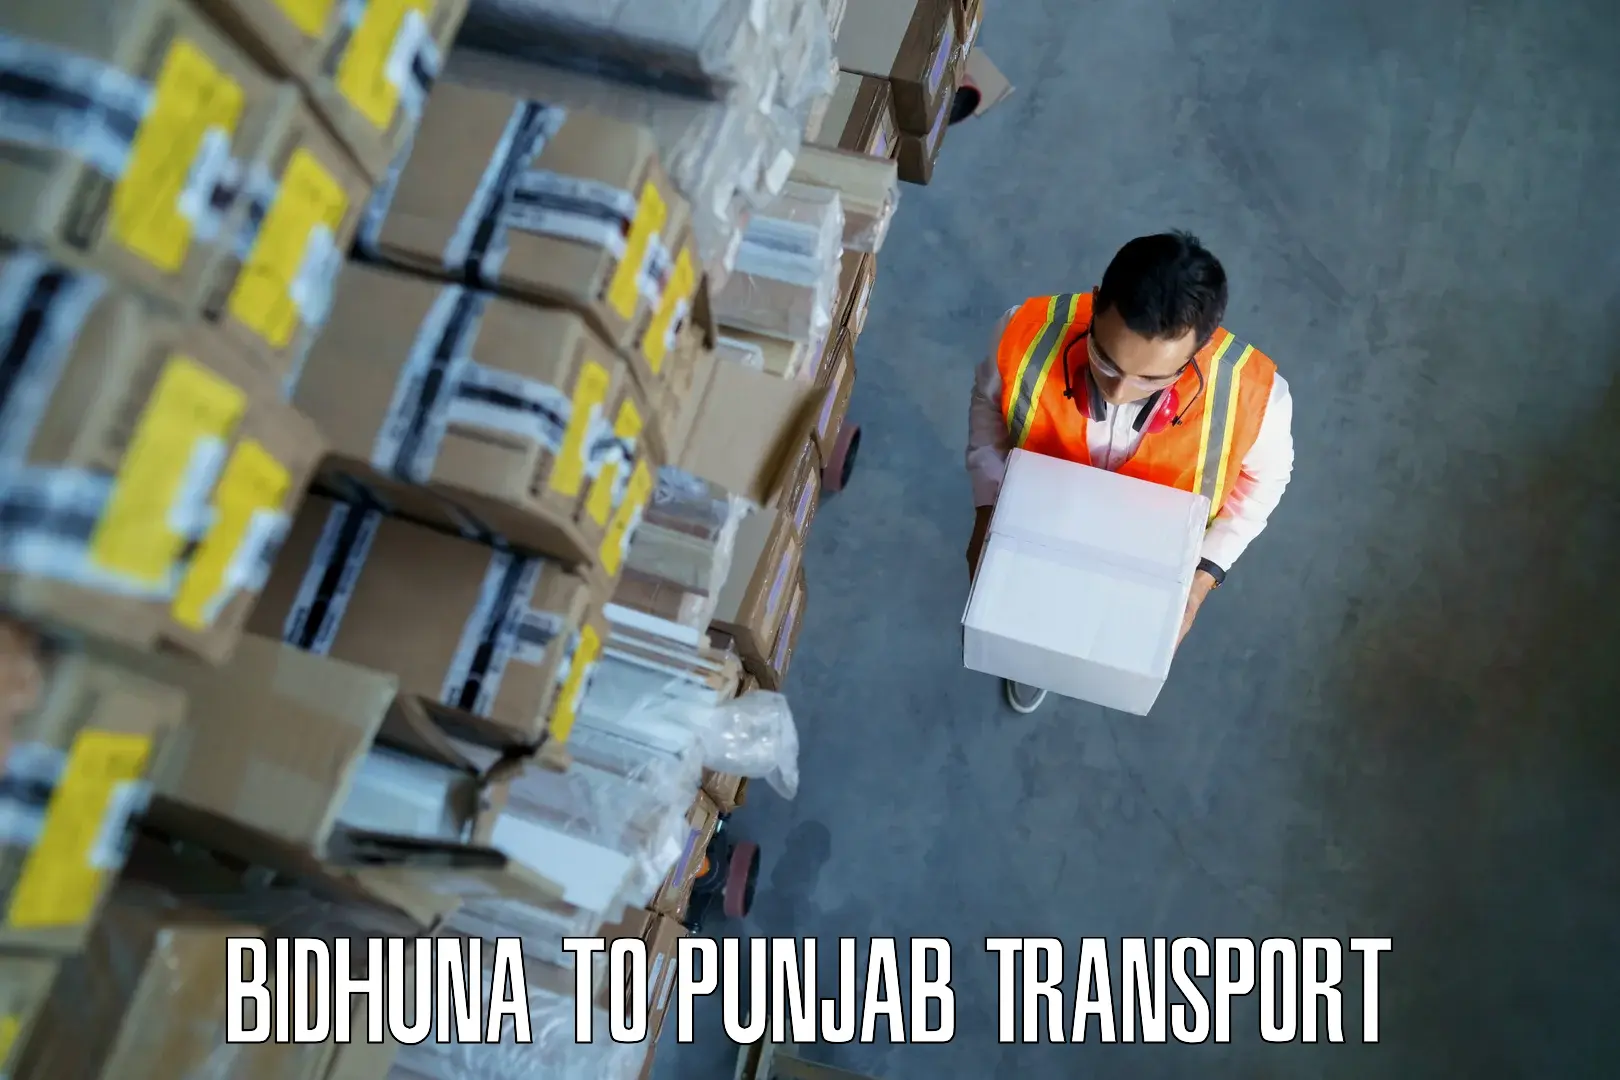 Shipping services in Bidhuna to Muktsar